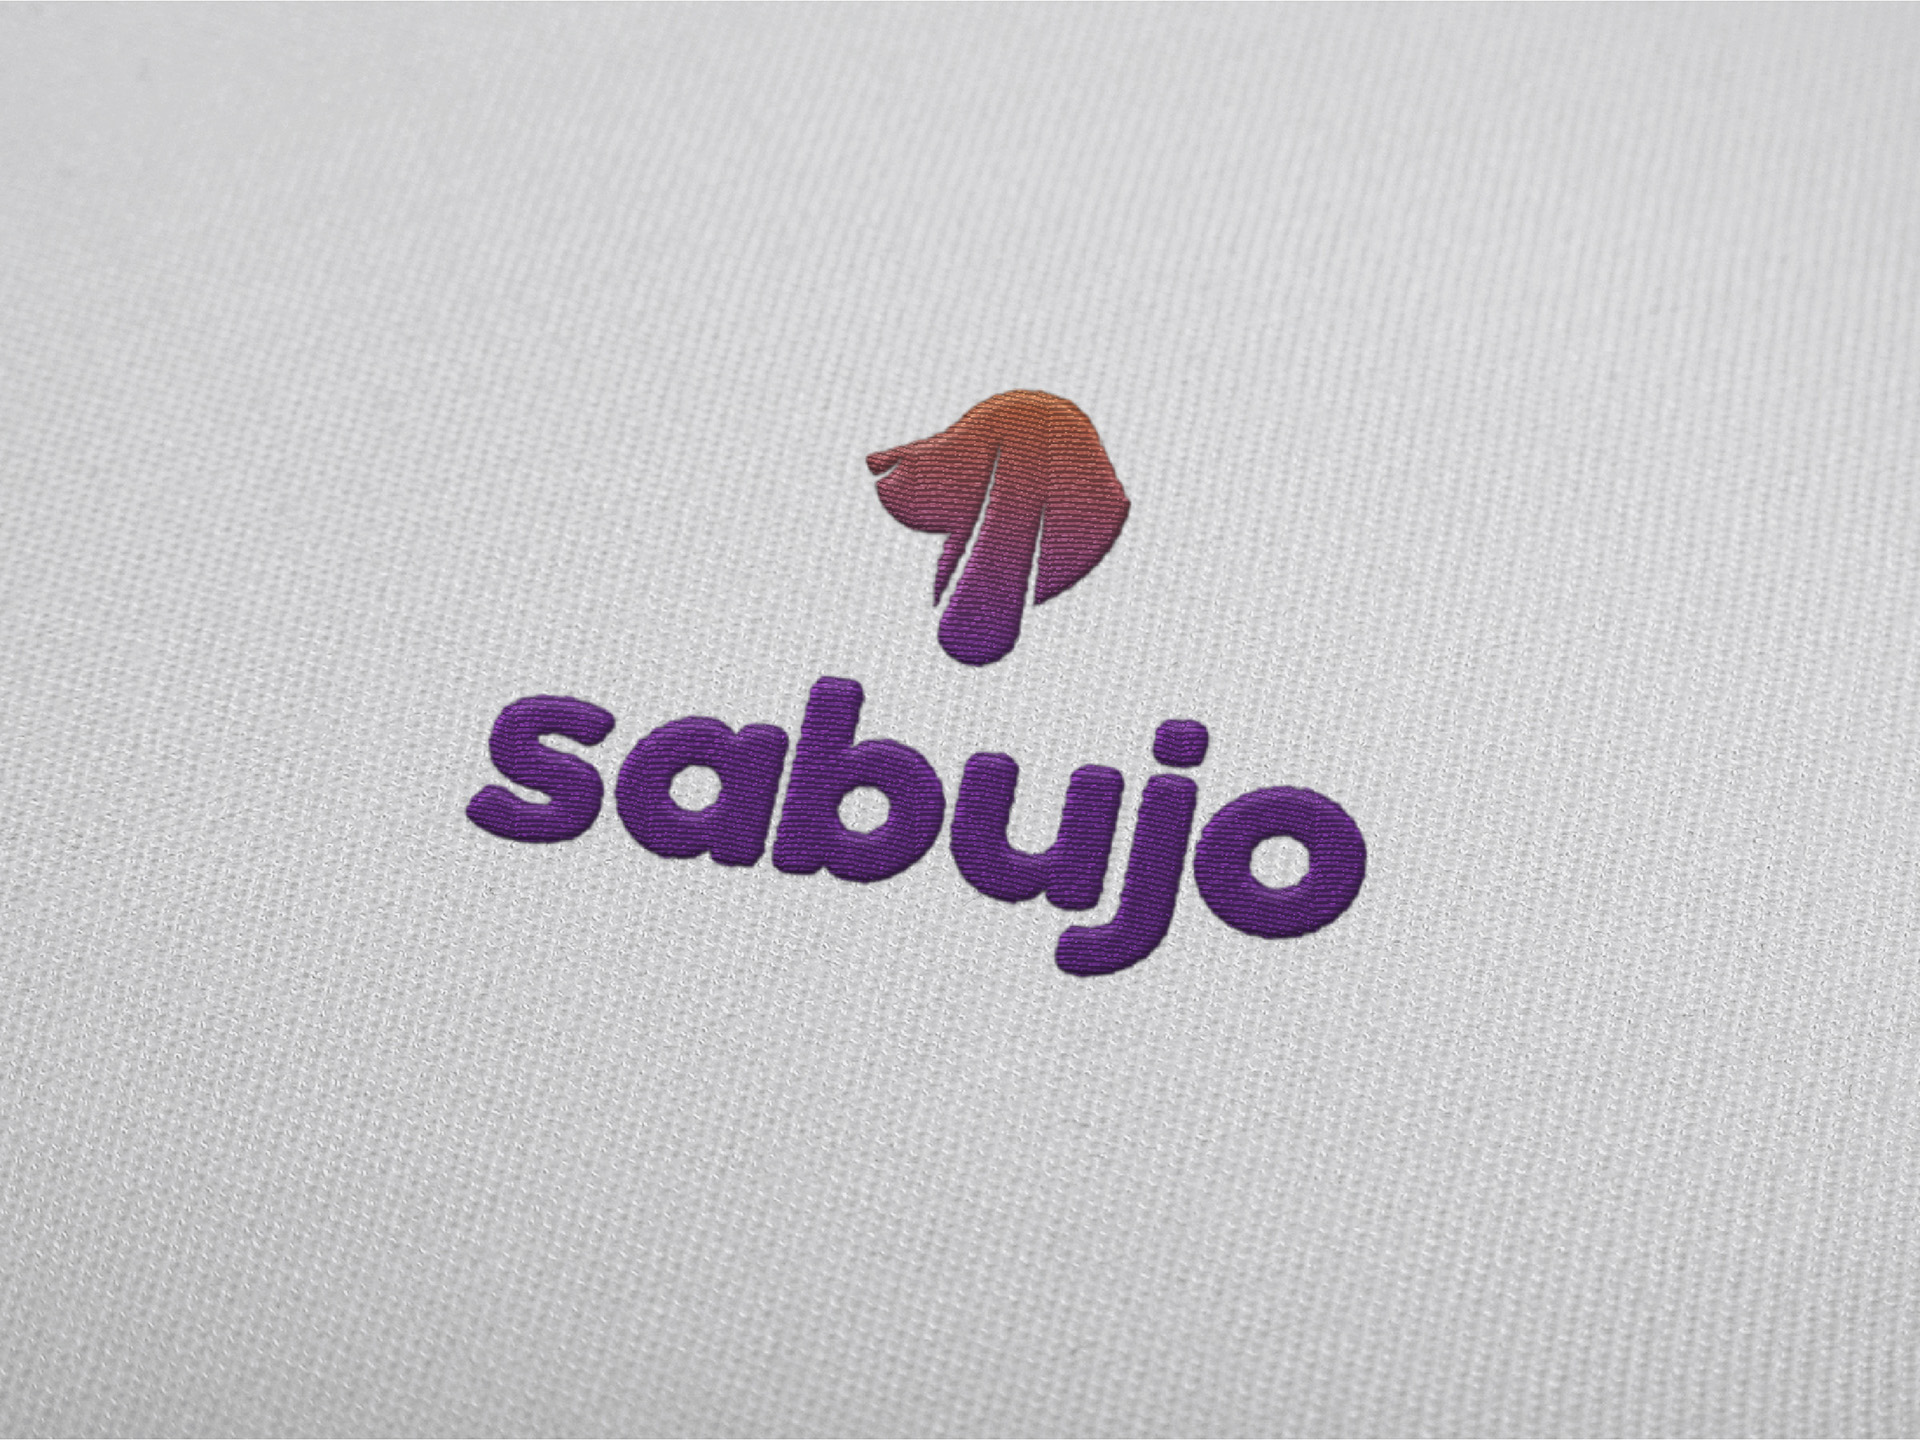 Sabujo - Branding - Criação de Logotipo - Agência Cachola